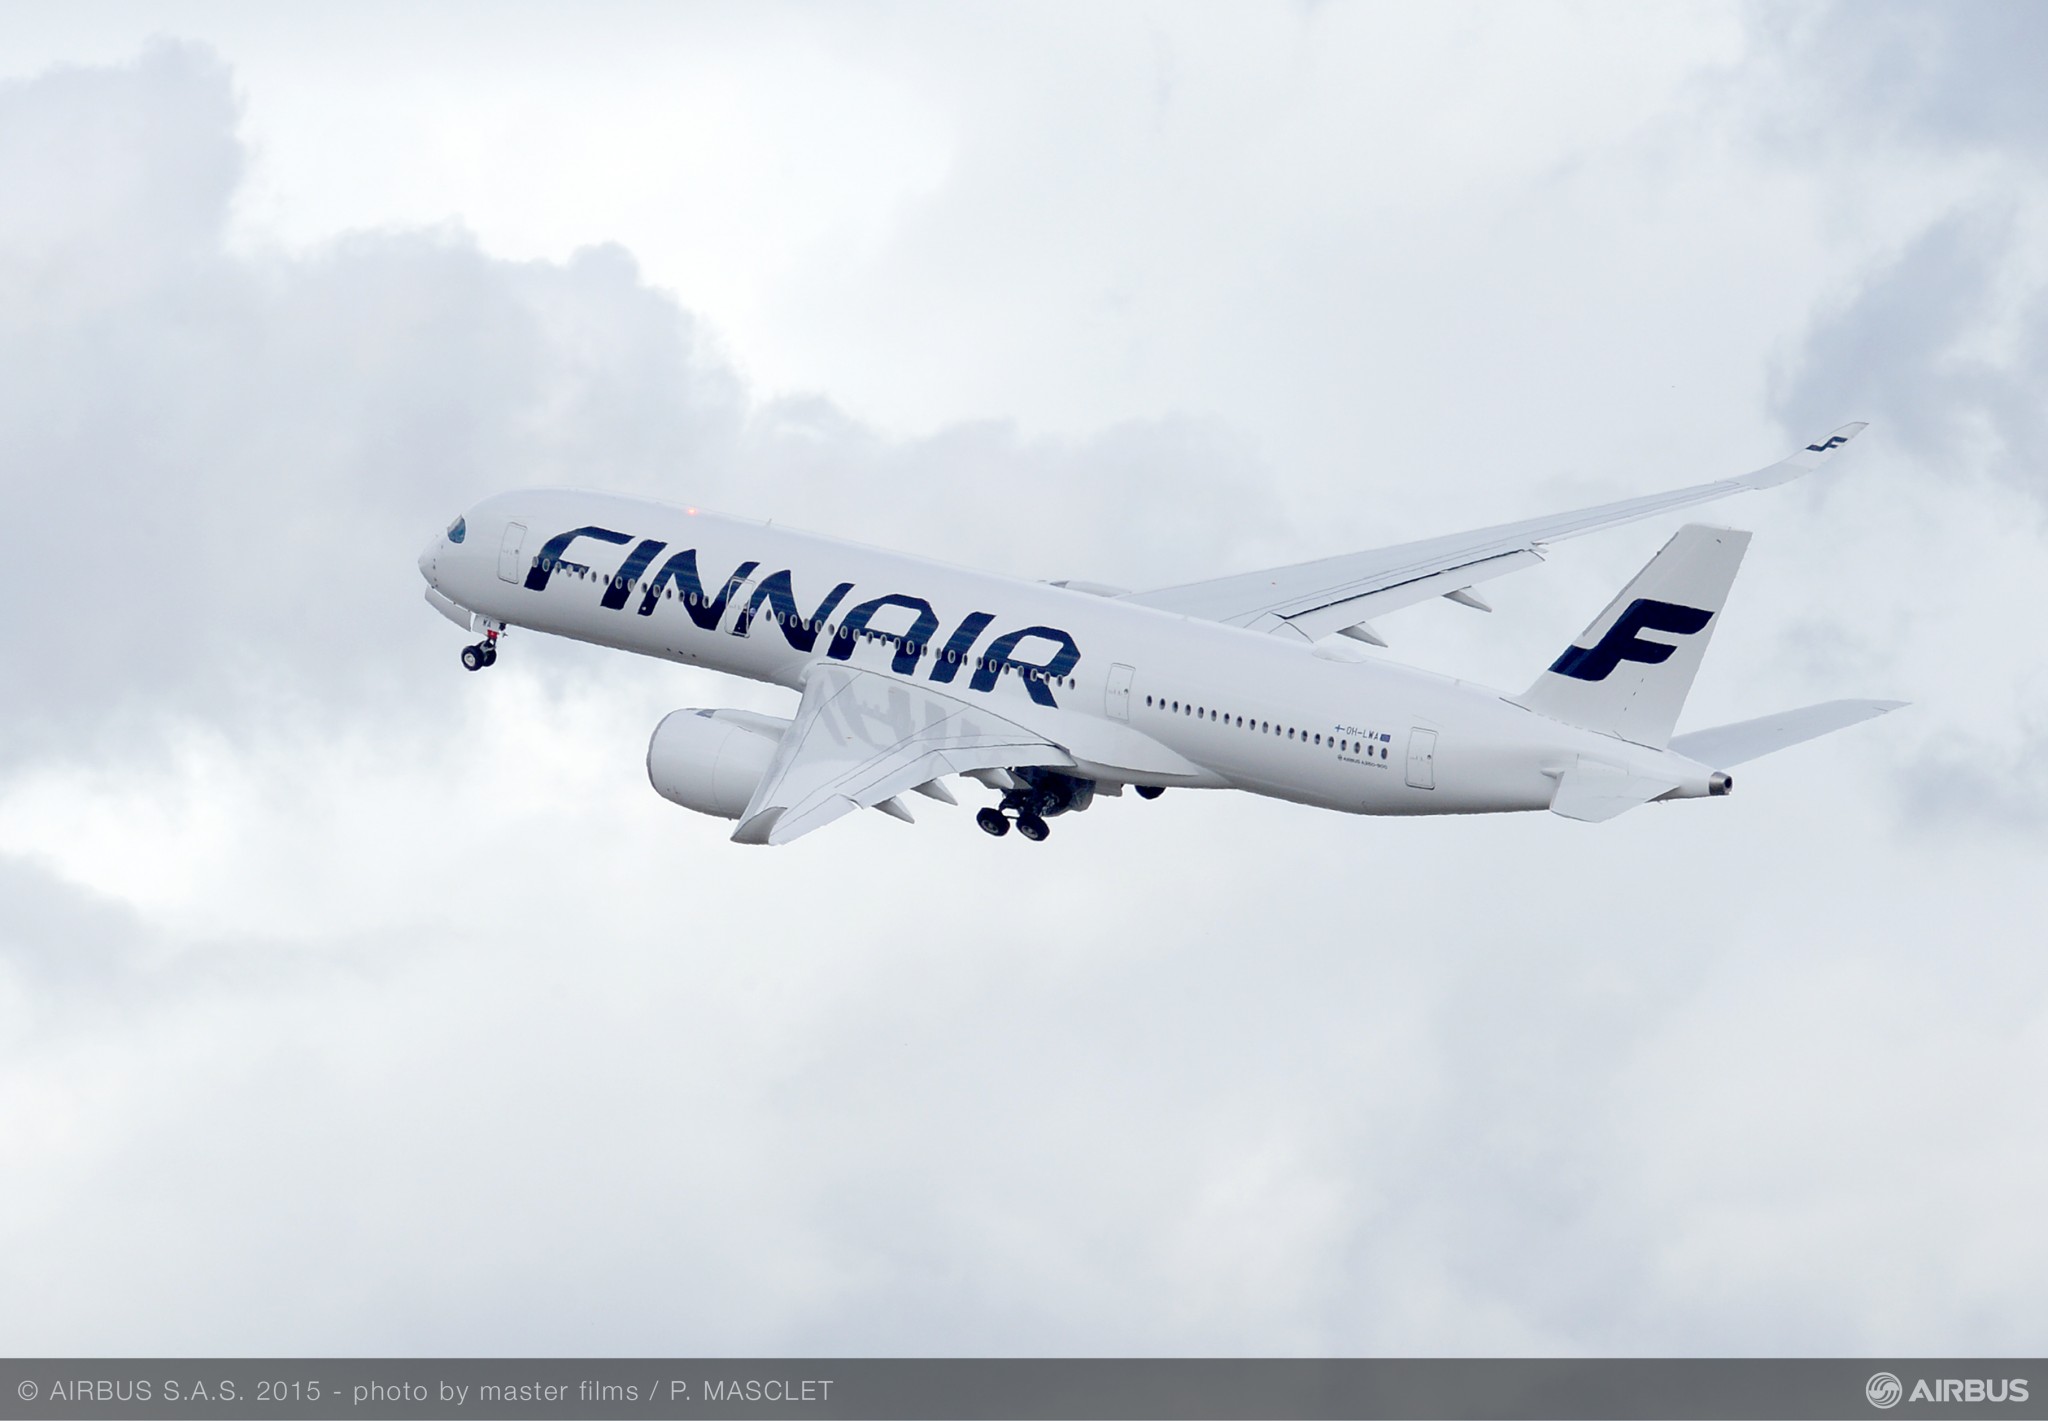 Finnair slashes 90% of flight capacity in latest profits warning 